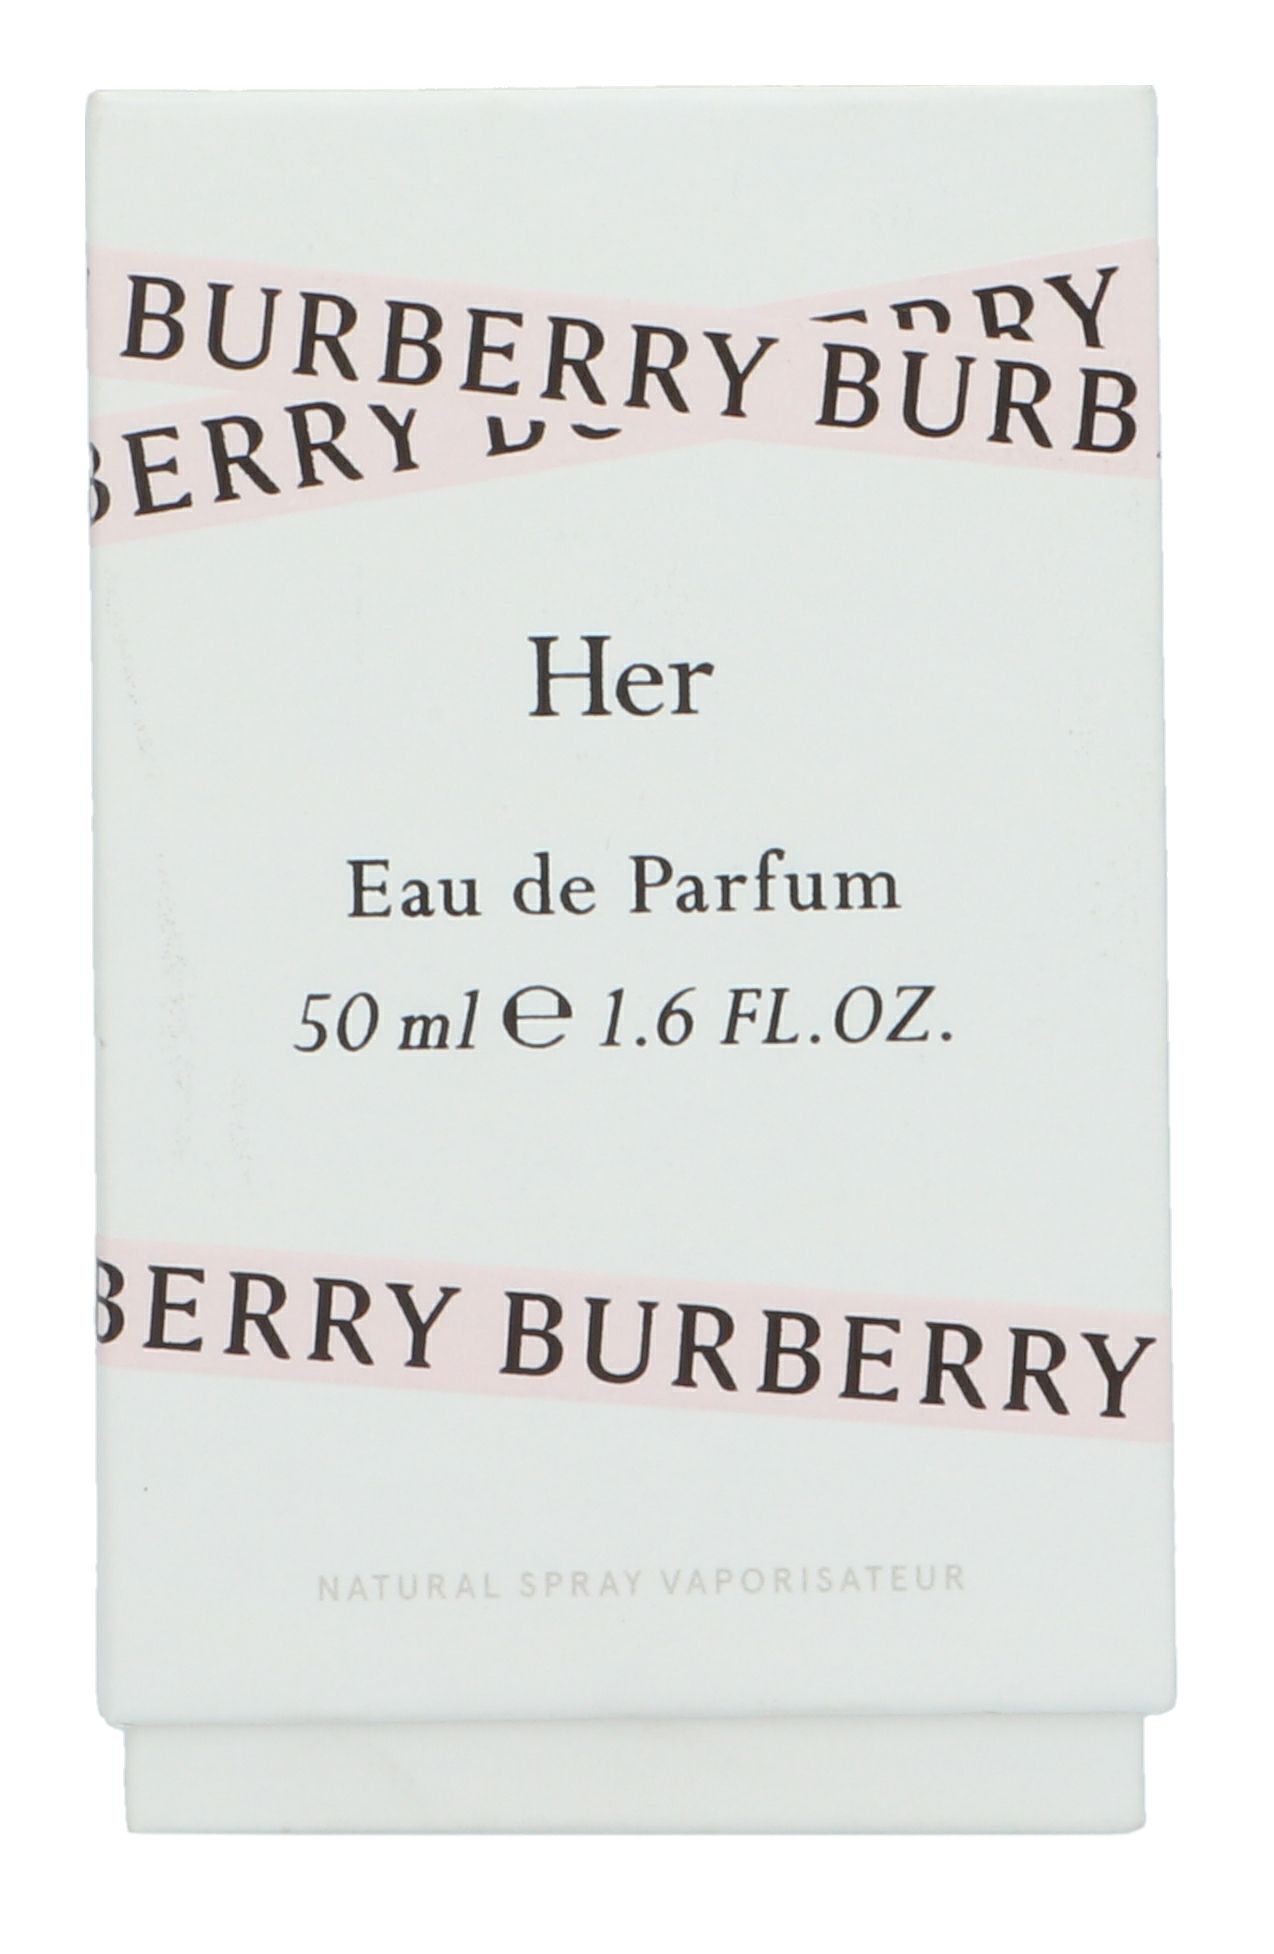 Burberry Haar Edp Spray